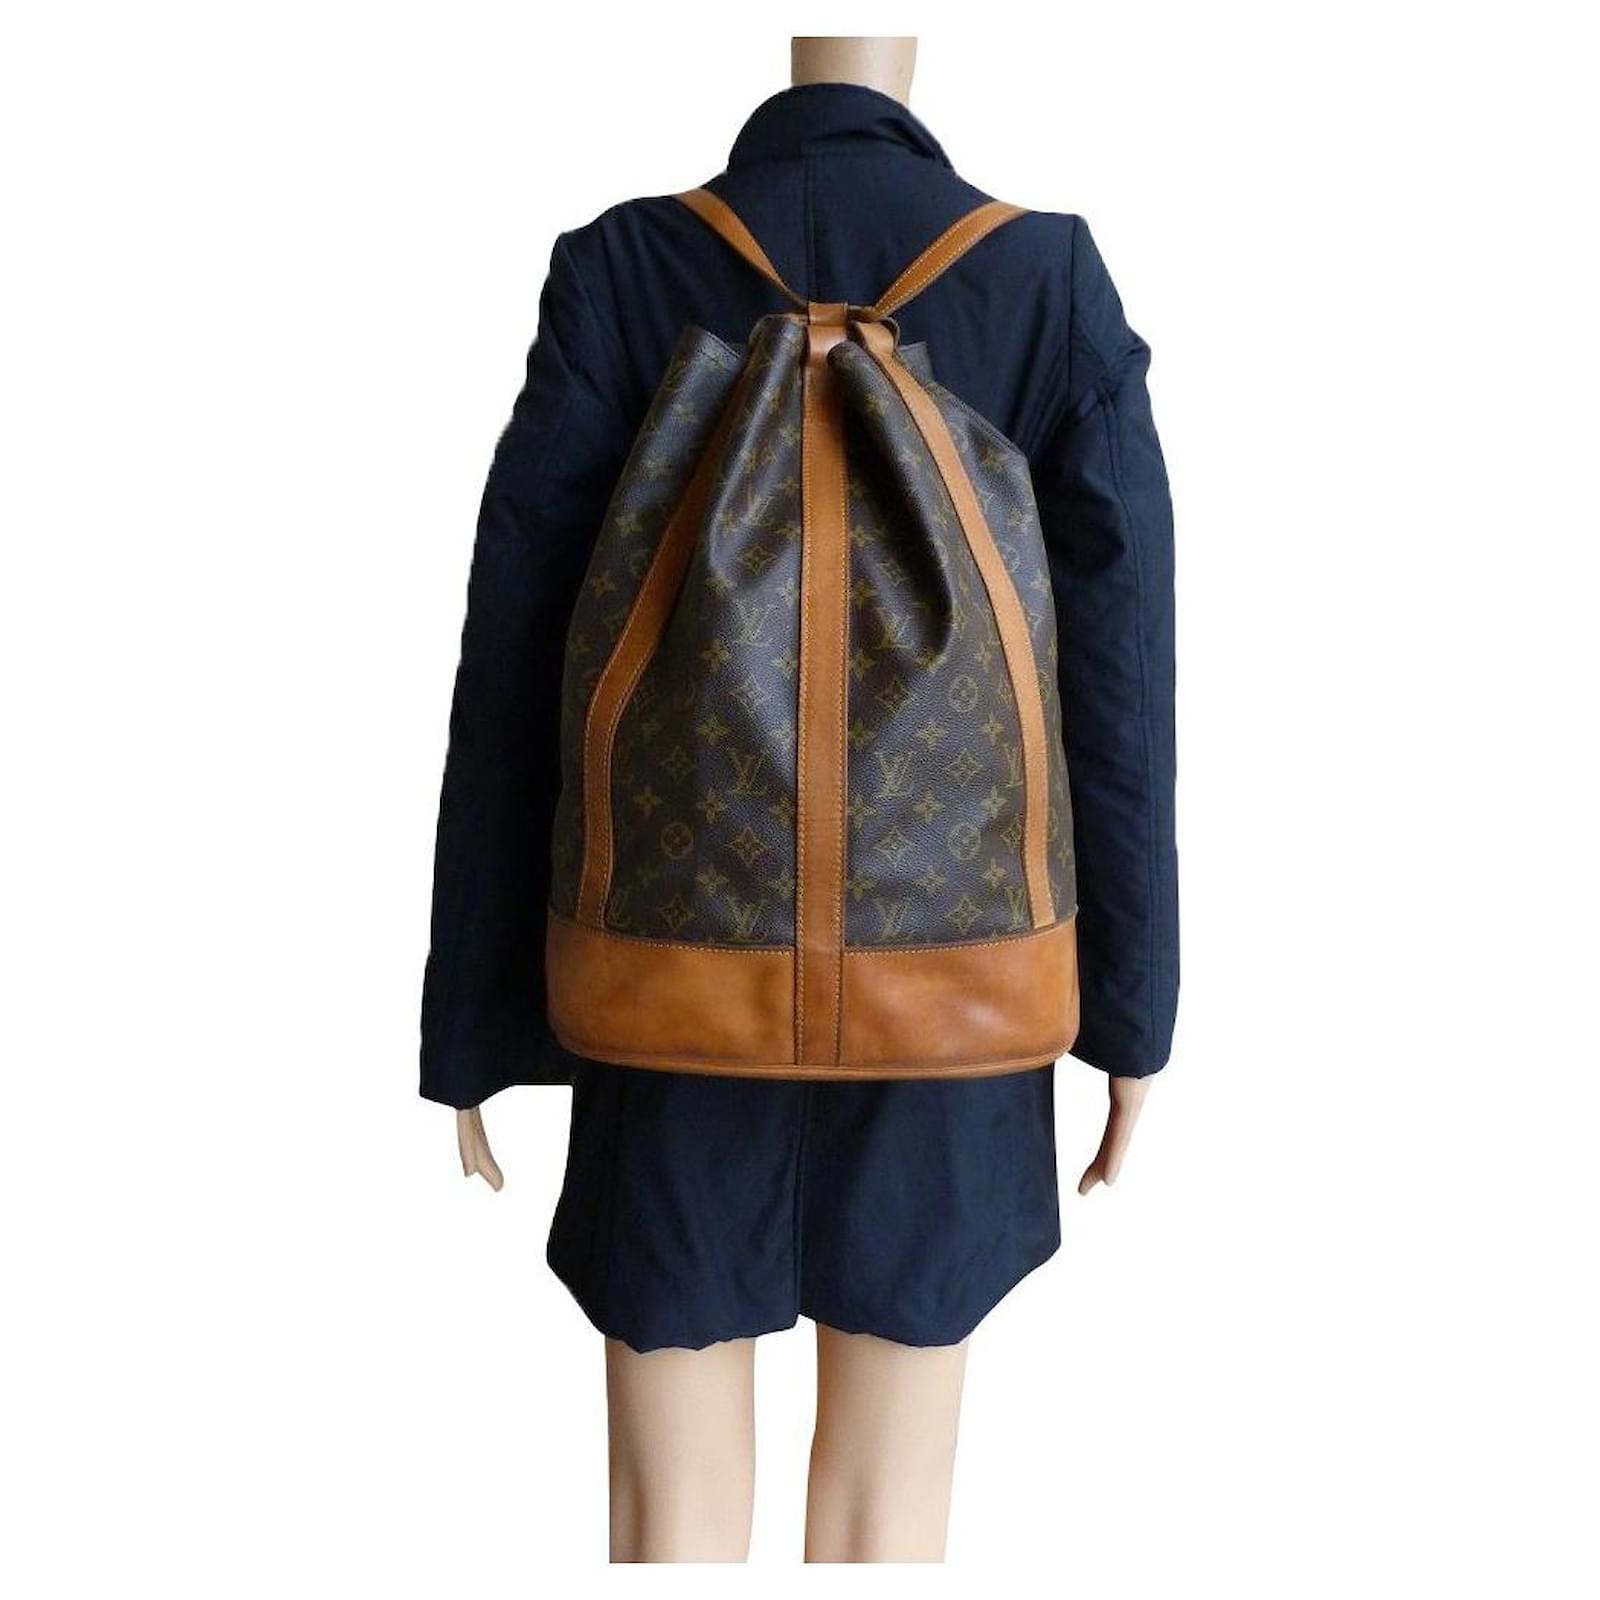 Louis Vuitton, Bags, Authentic Vintage Louis Vuitton Big Backpack